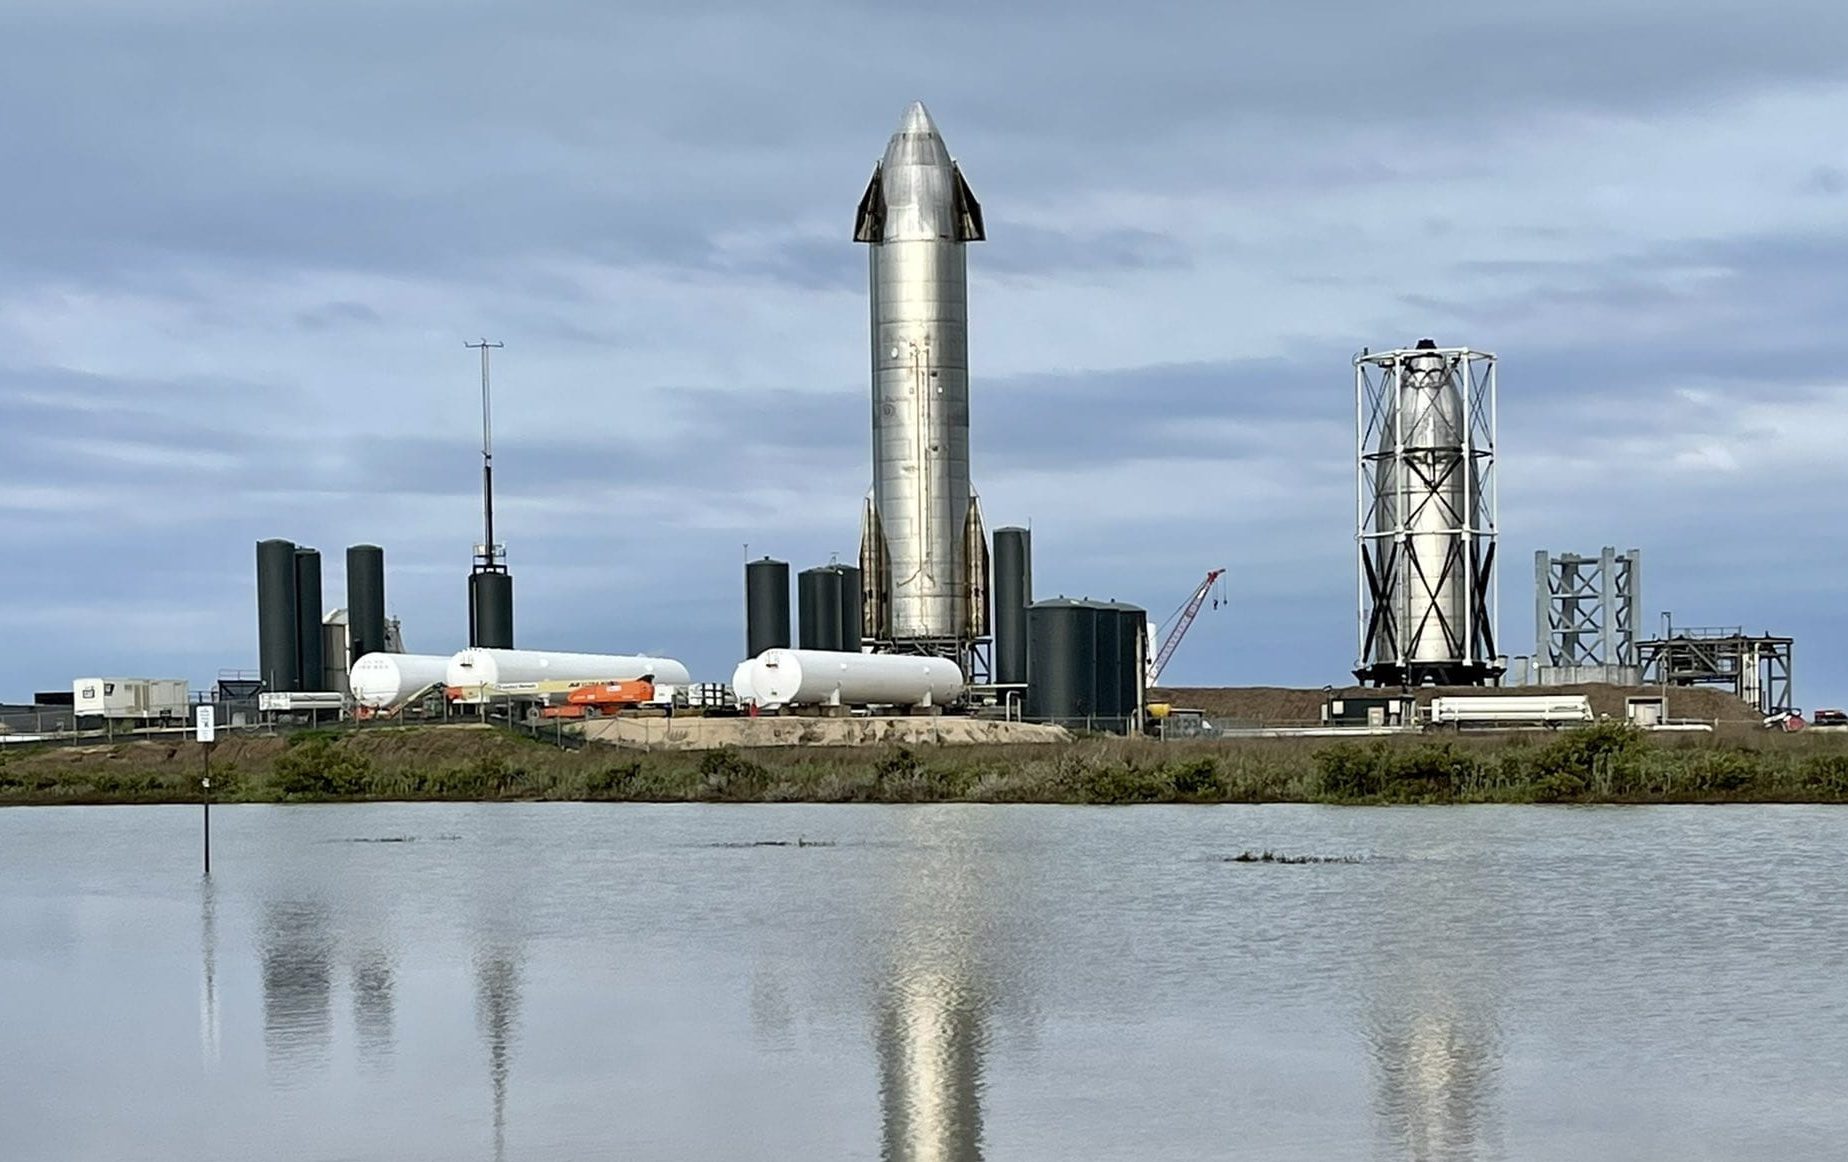 SpaceX asettaa päivämäärän Starshipin ensimmäiselle kiertoradalle, jolla on erittäin raskas tehosterokotus